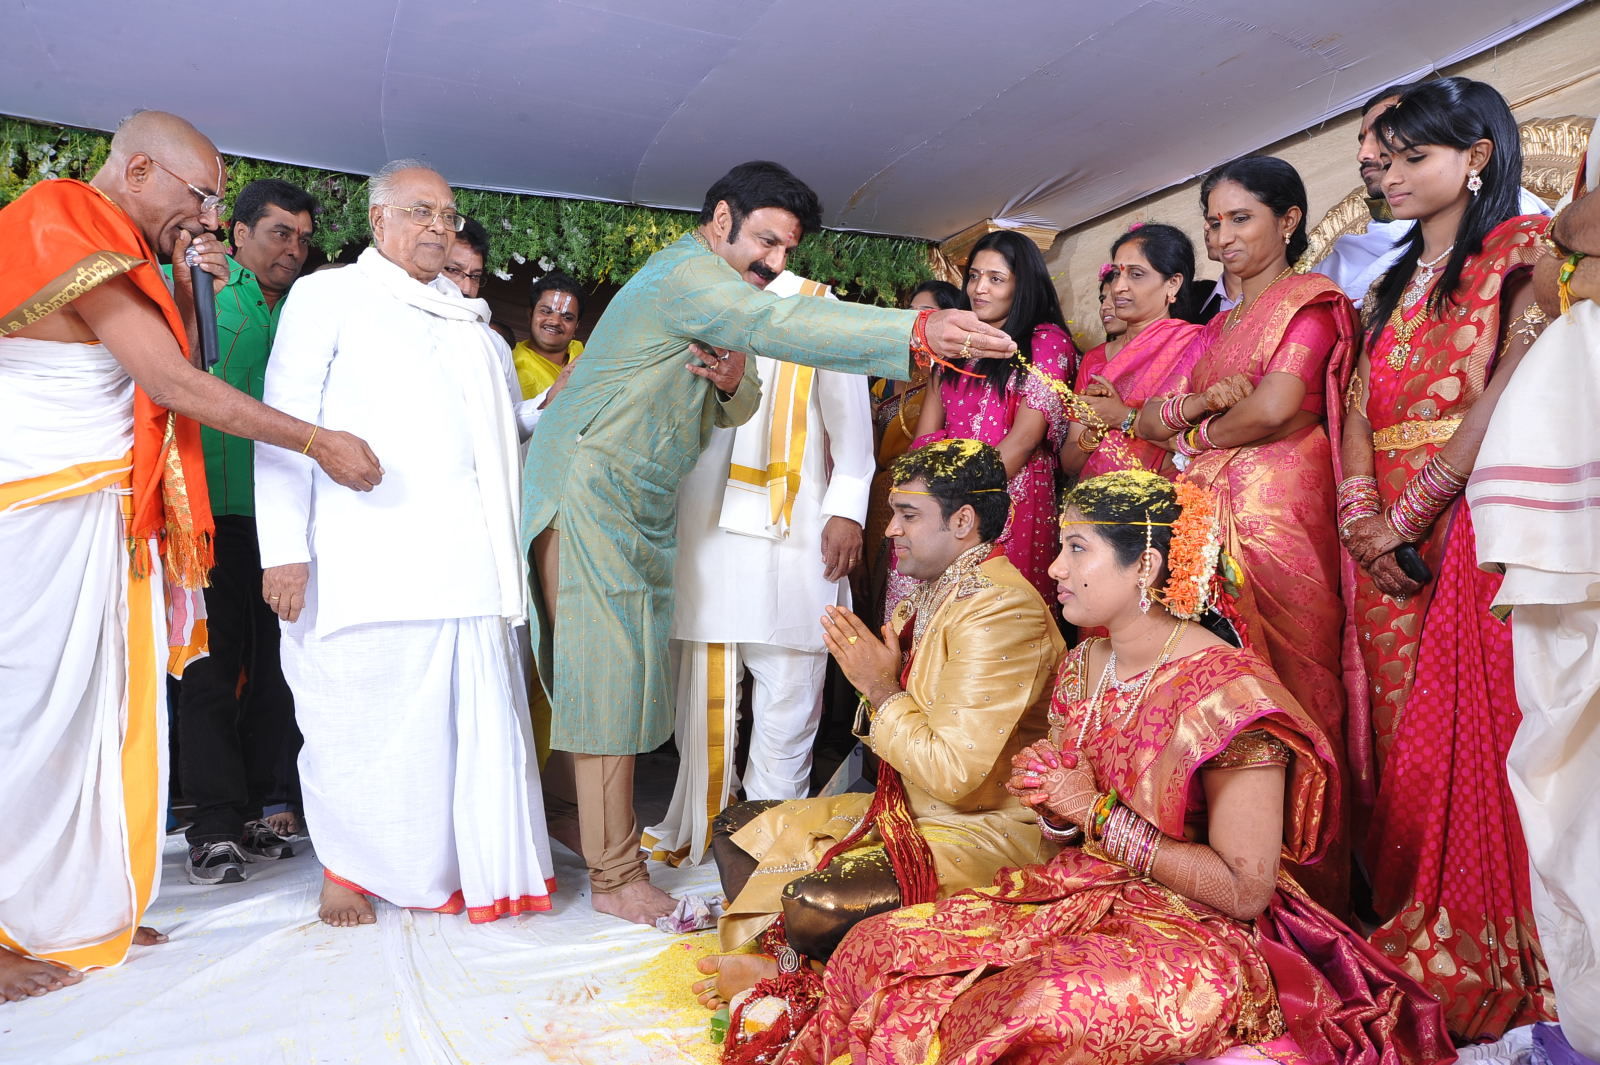 Ahuti Prasad Son Wedding Stills | Picture 172510